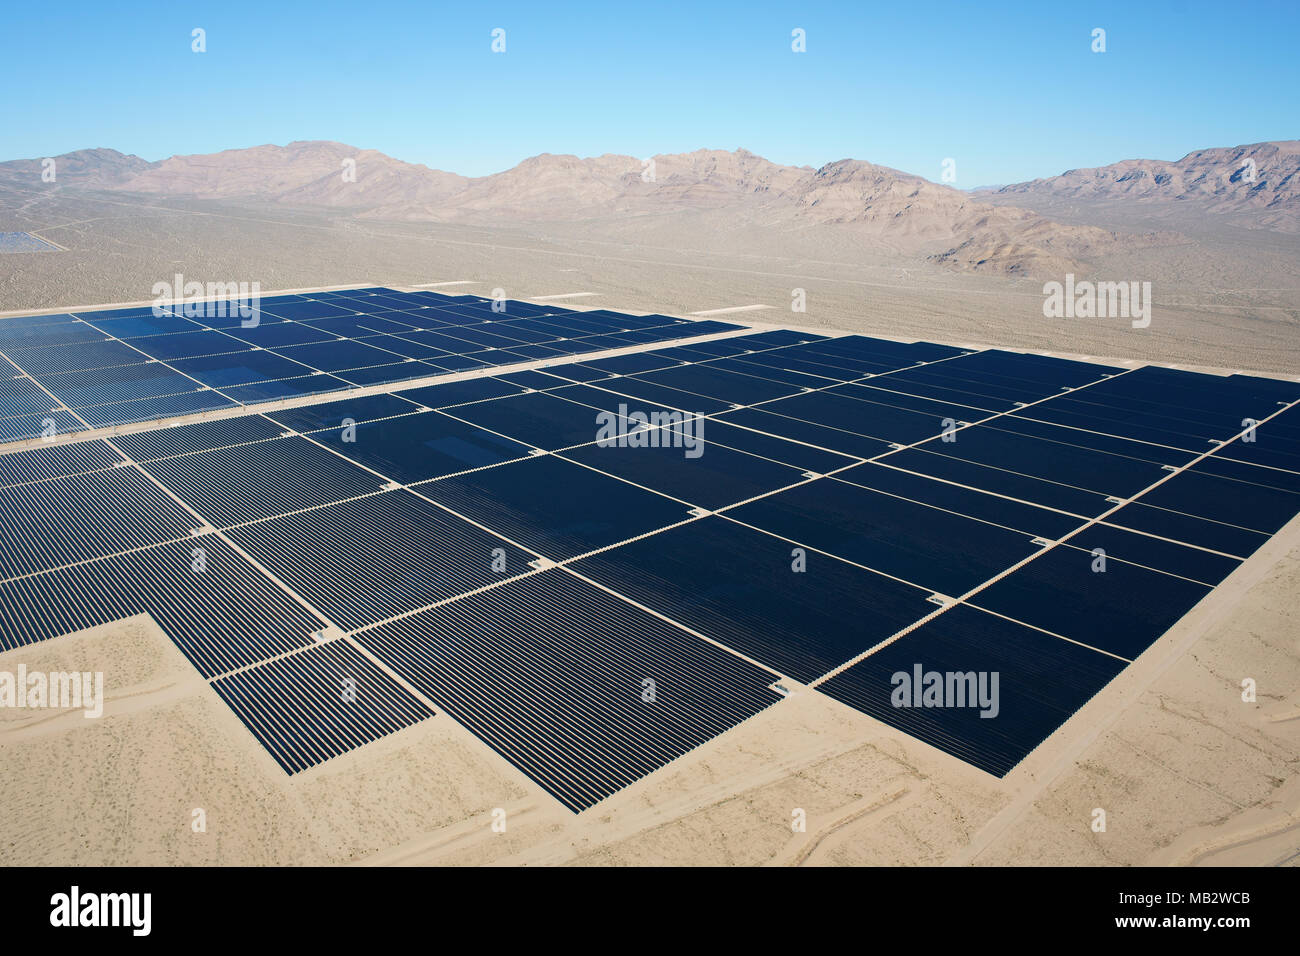 VISTA AEREA. Ampio campo di pannelli fotovoltaici nel deserto roccioso del Mojave. Stateline Solar Facility, Nipton, San Bernardino County, California, USA. Foto Stock